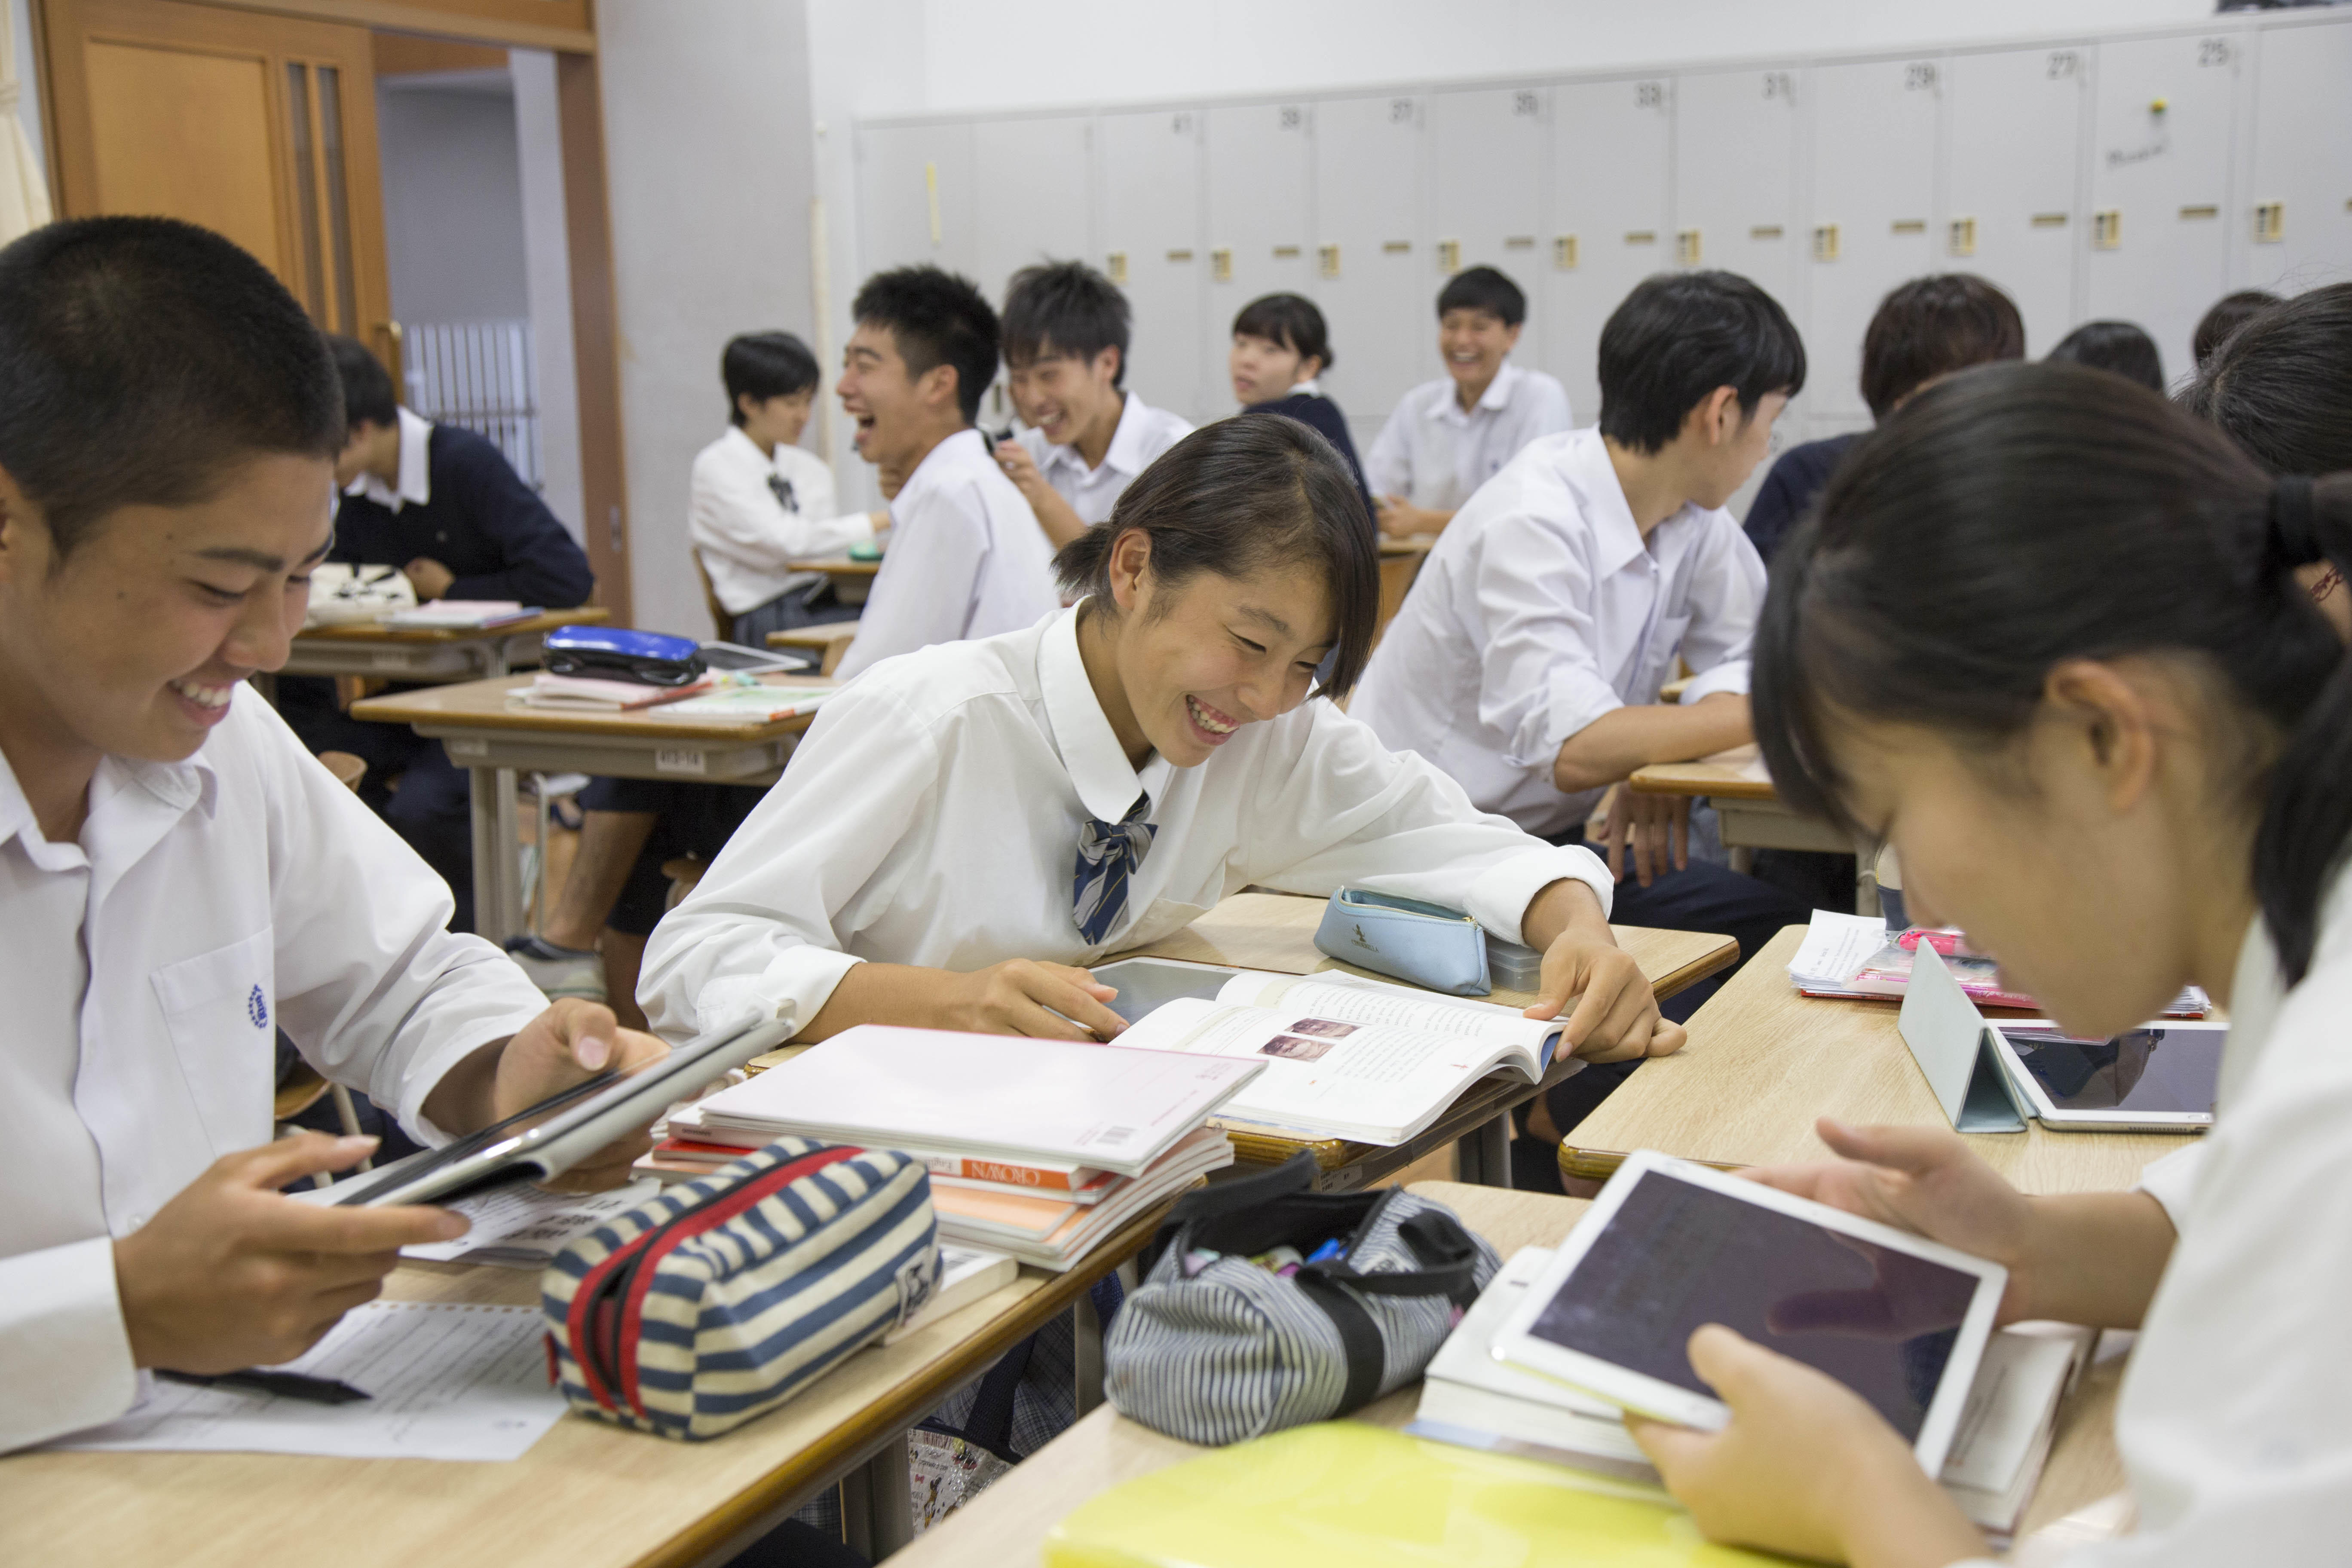 明星中学校・高等学校が「ICT教育研究会 with Classi In Meisei」を3月28日に開催 -- Classi株式会社との共催で多様なICT教育の情報を発信 ～同校生徒による英語での発表も